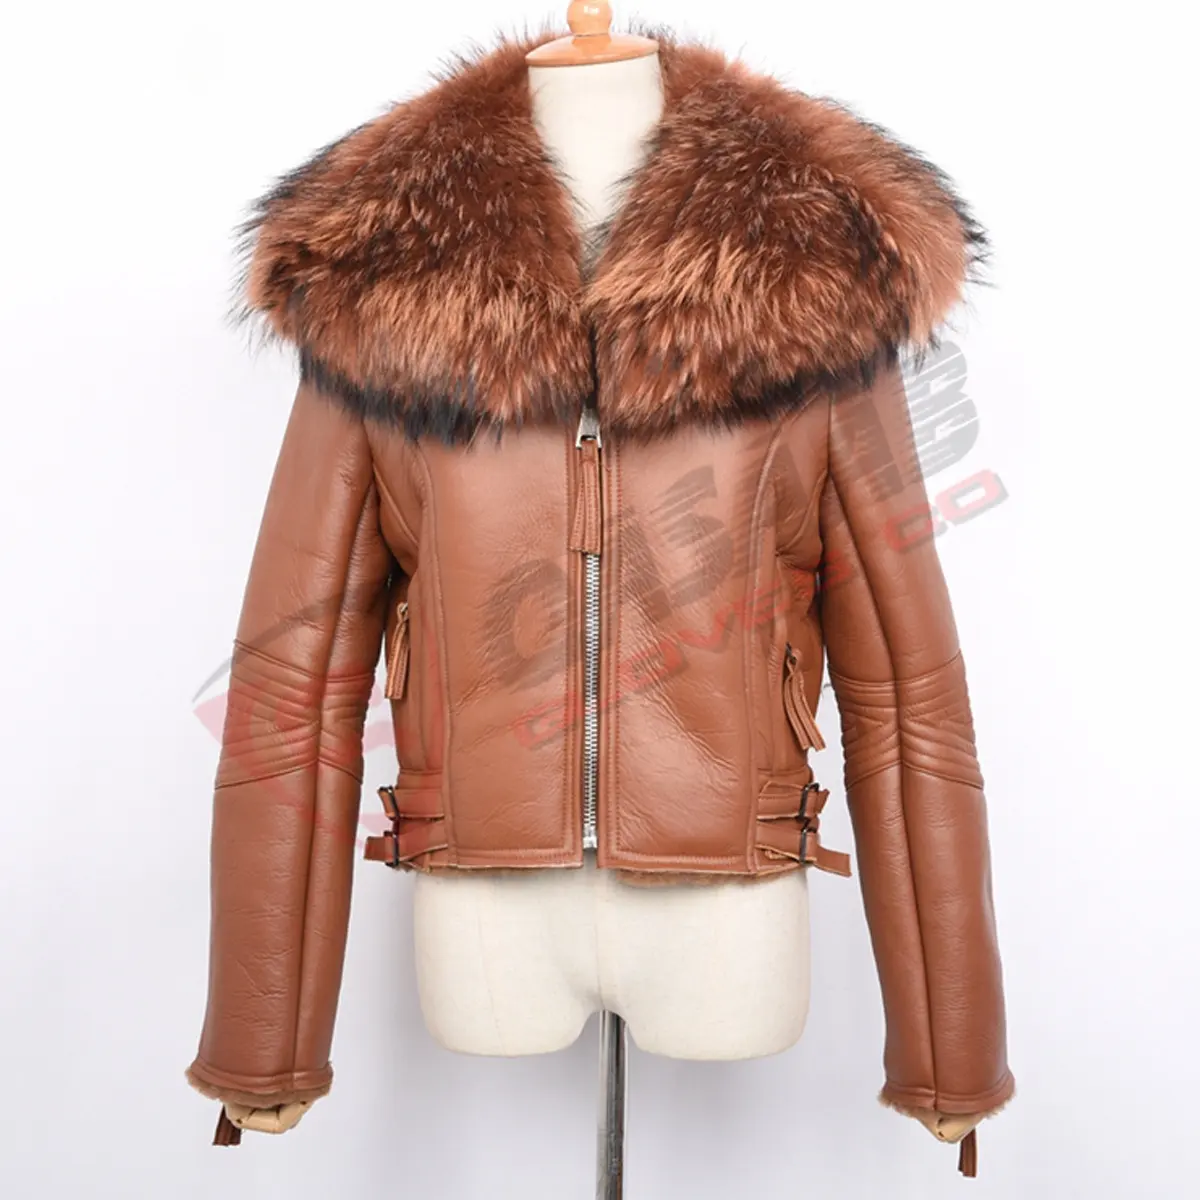 क्लासिक-डिज़ाइन महिला फर-कॉलर शीतकालीन शीपस्किन चमड़ा शॉर्ट-जैकेट भूरे रंग की सांस लेने योग्य महिला फर कॉलर बाइकर जैकेट